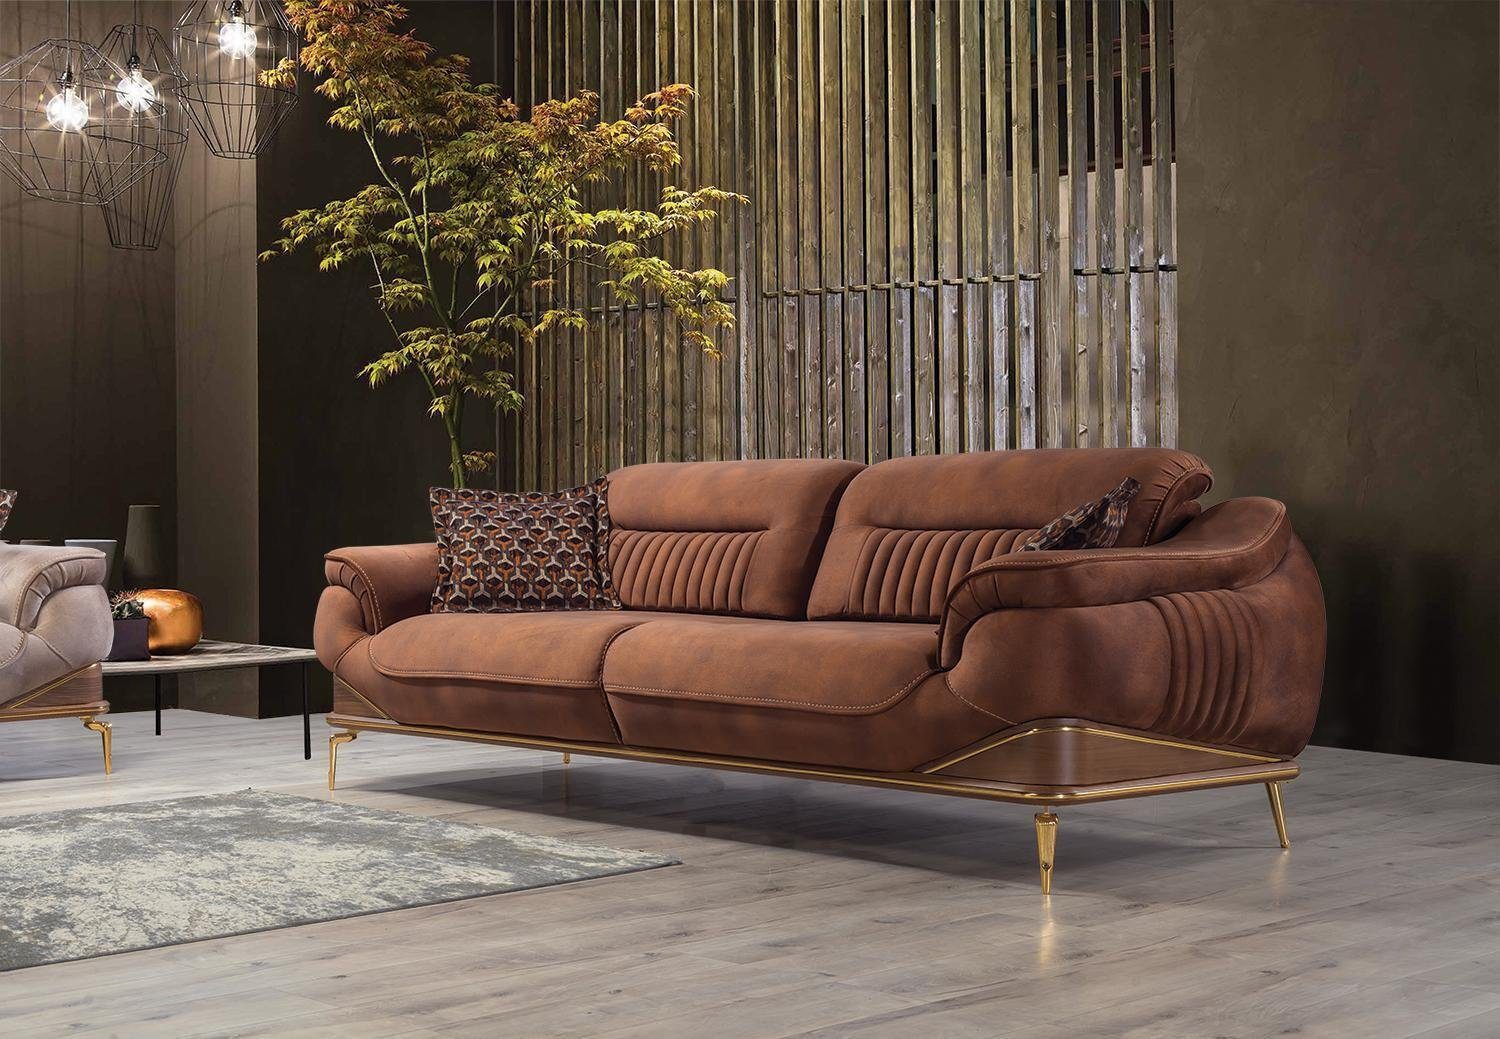 Teile, Wohnzimmer Sofas, 1 Luxus JVmoebel Dreisitzer Europa Neu Sofa Made Modern Sofa Couch Design in